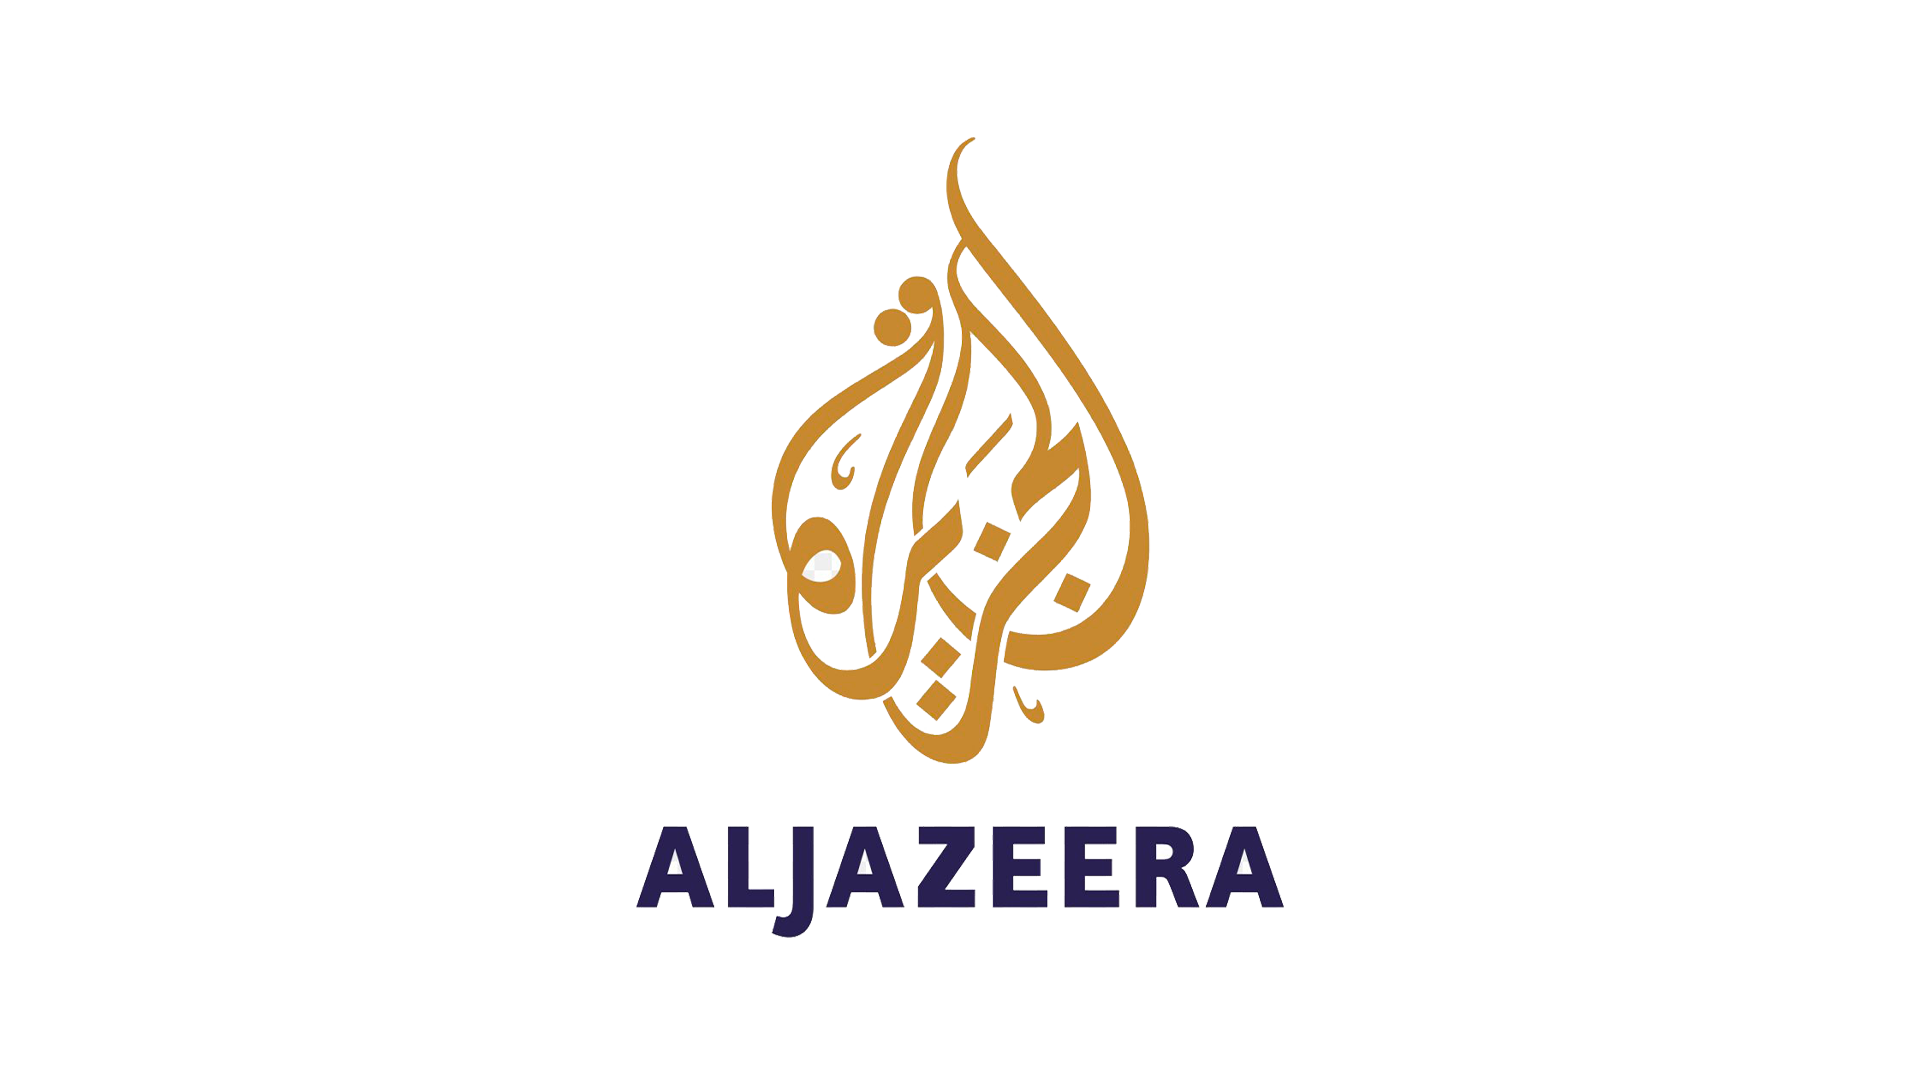 Aljazeera 